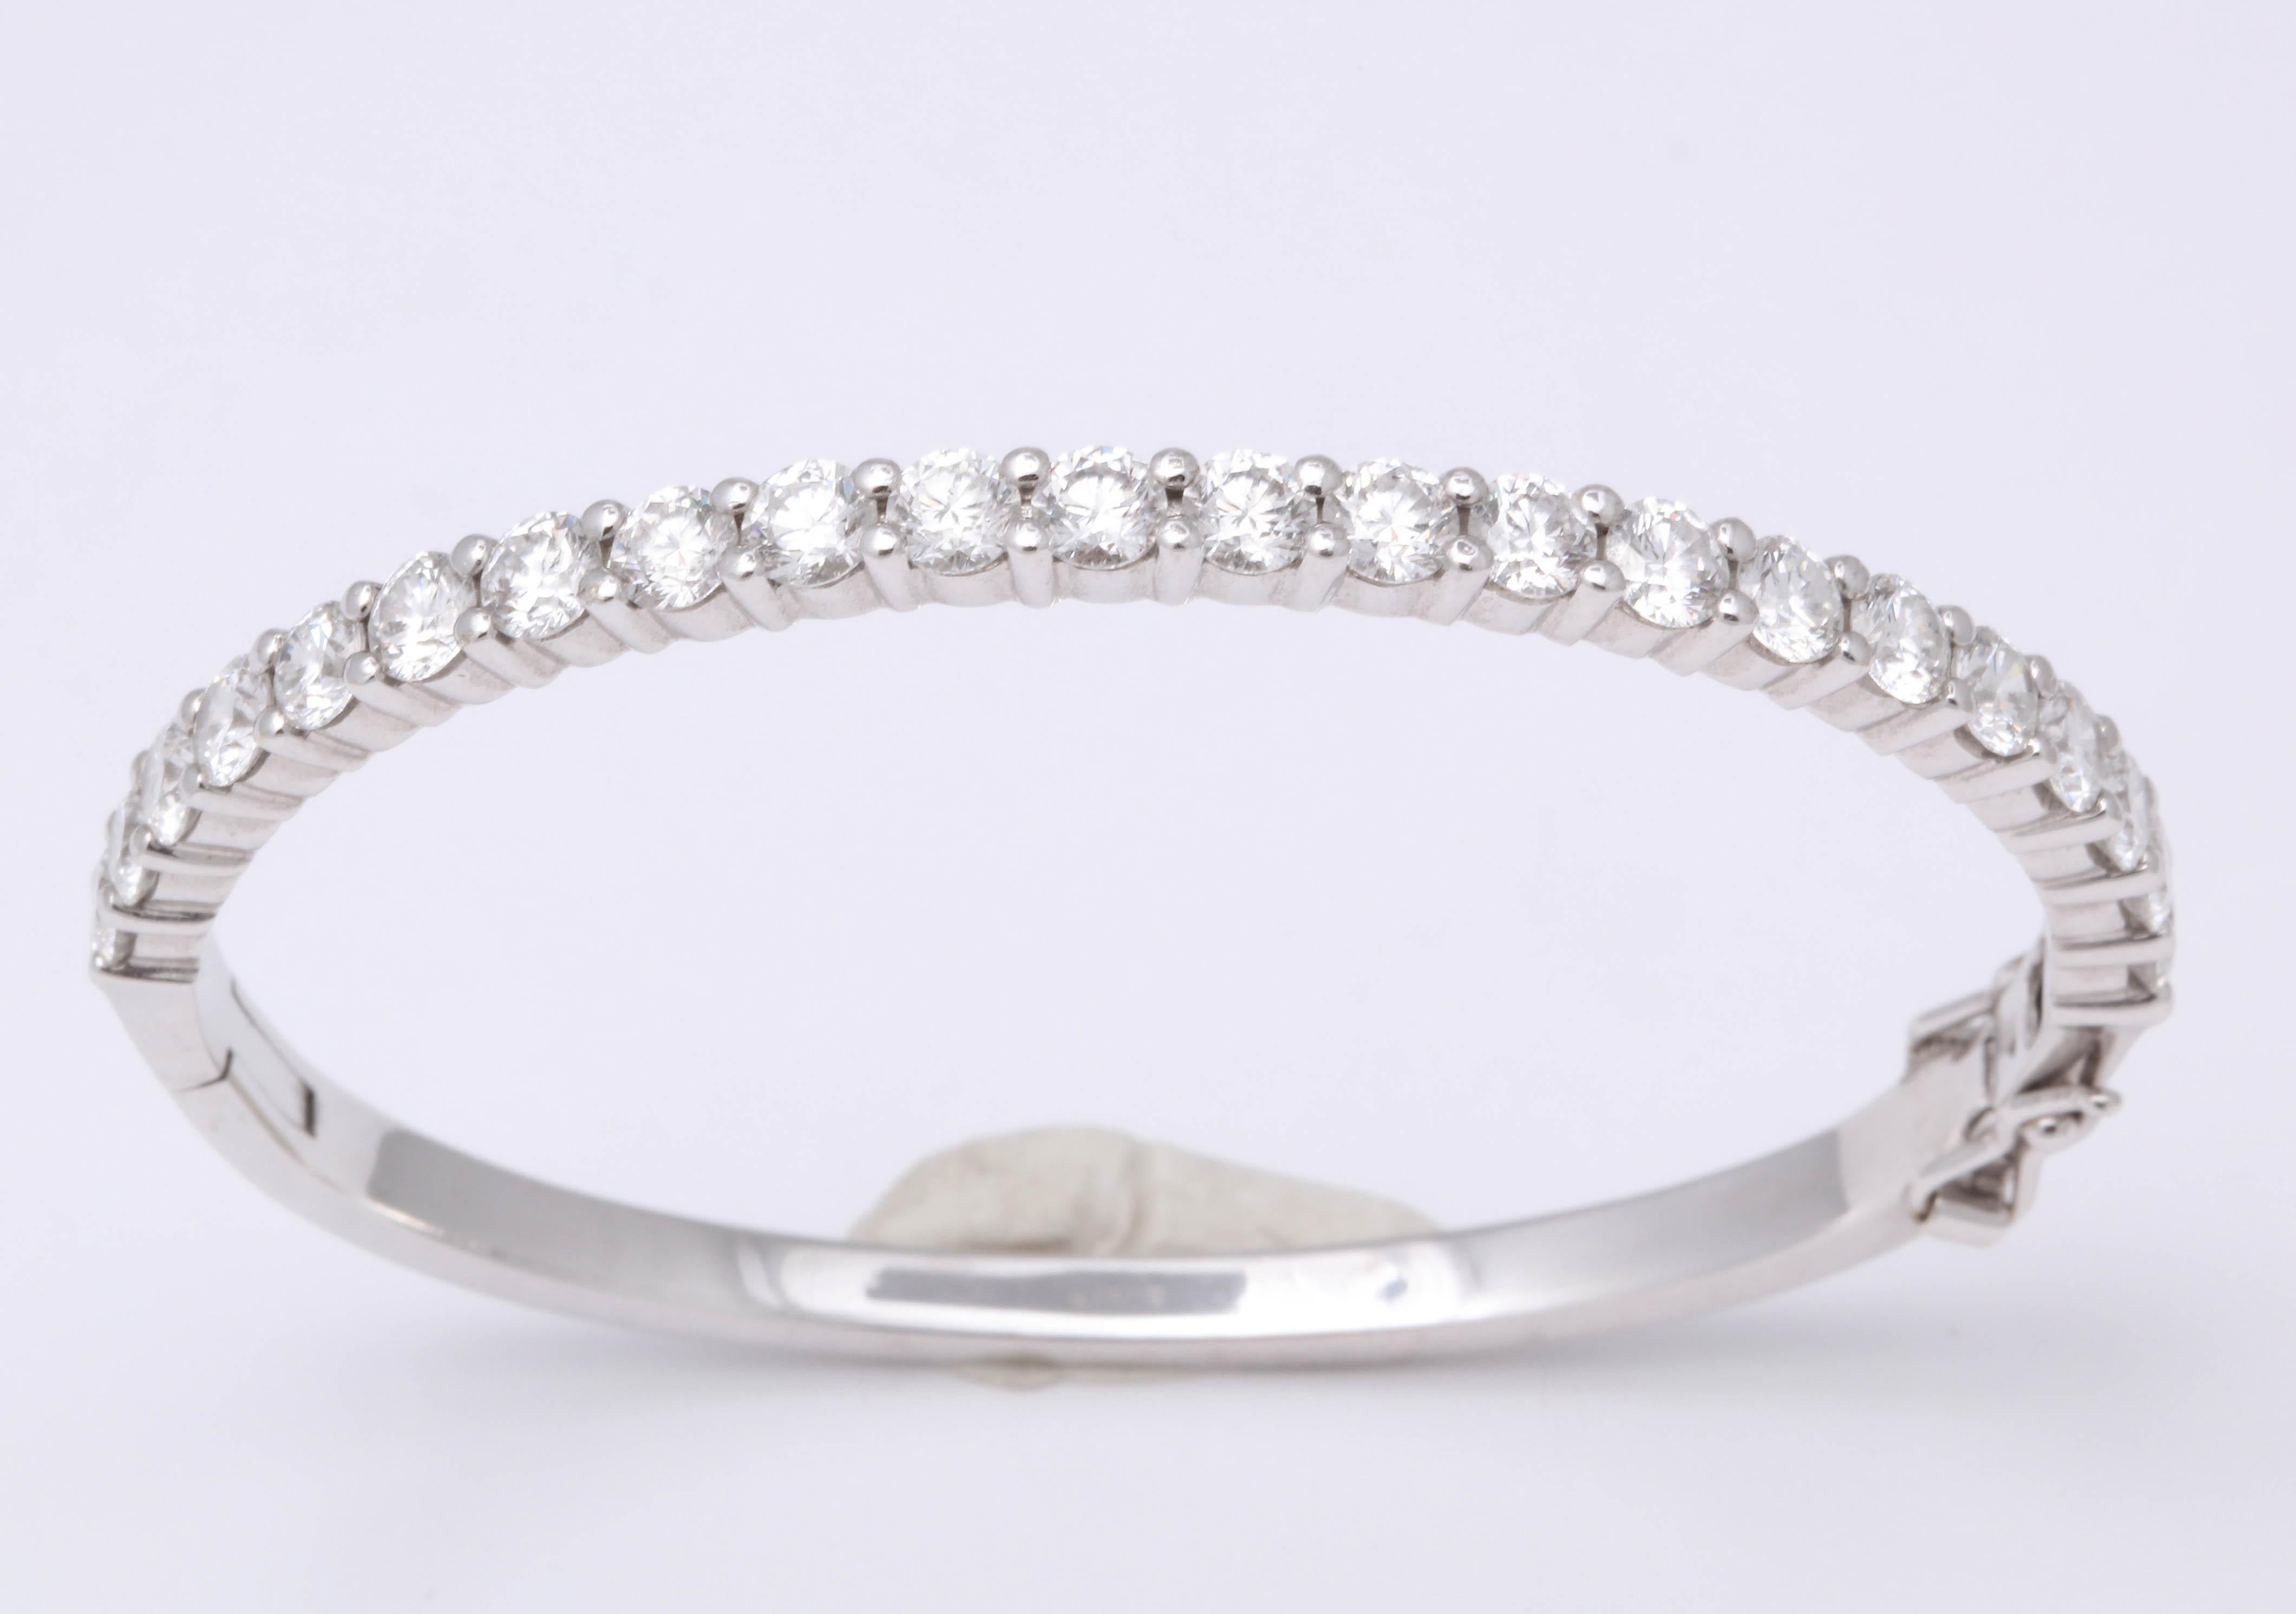 
Un incroyable bracelet en diamants !

4.30 carats de diamants ronds blancs de taille brillant sertis dans de l'or blanc.

Les diamants sont pleins de feu - très brillants. 

Un magnifique bracelet bangle (et très facile à porter).

Il fait